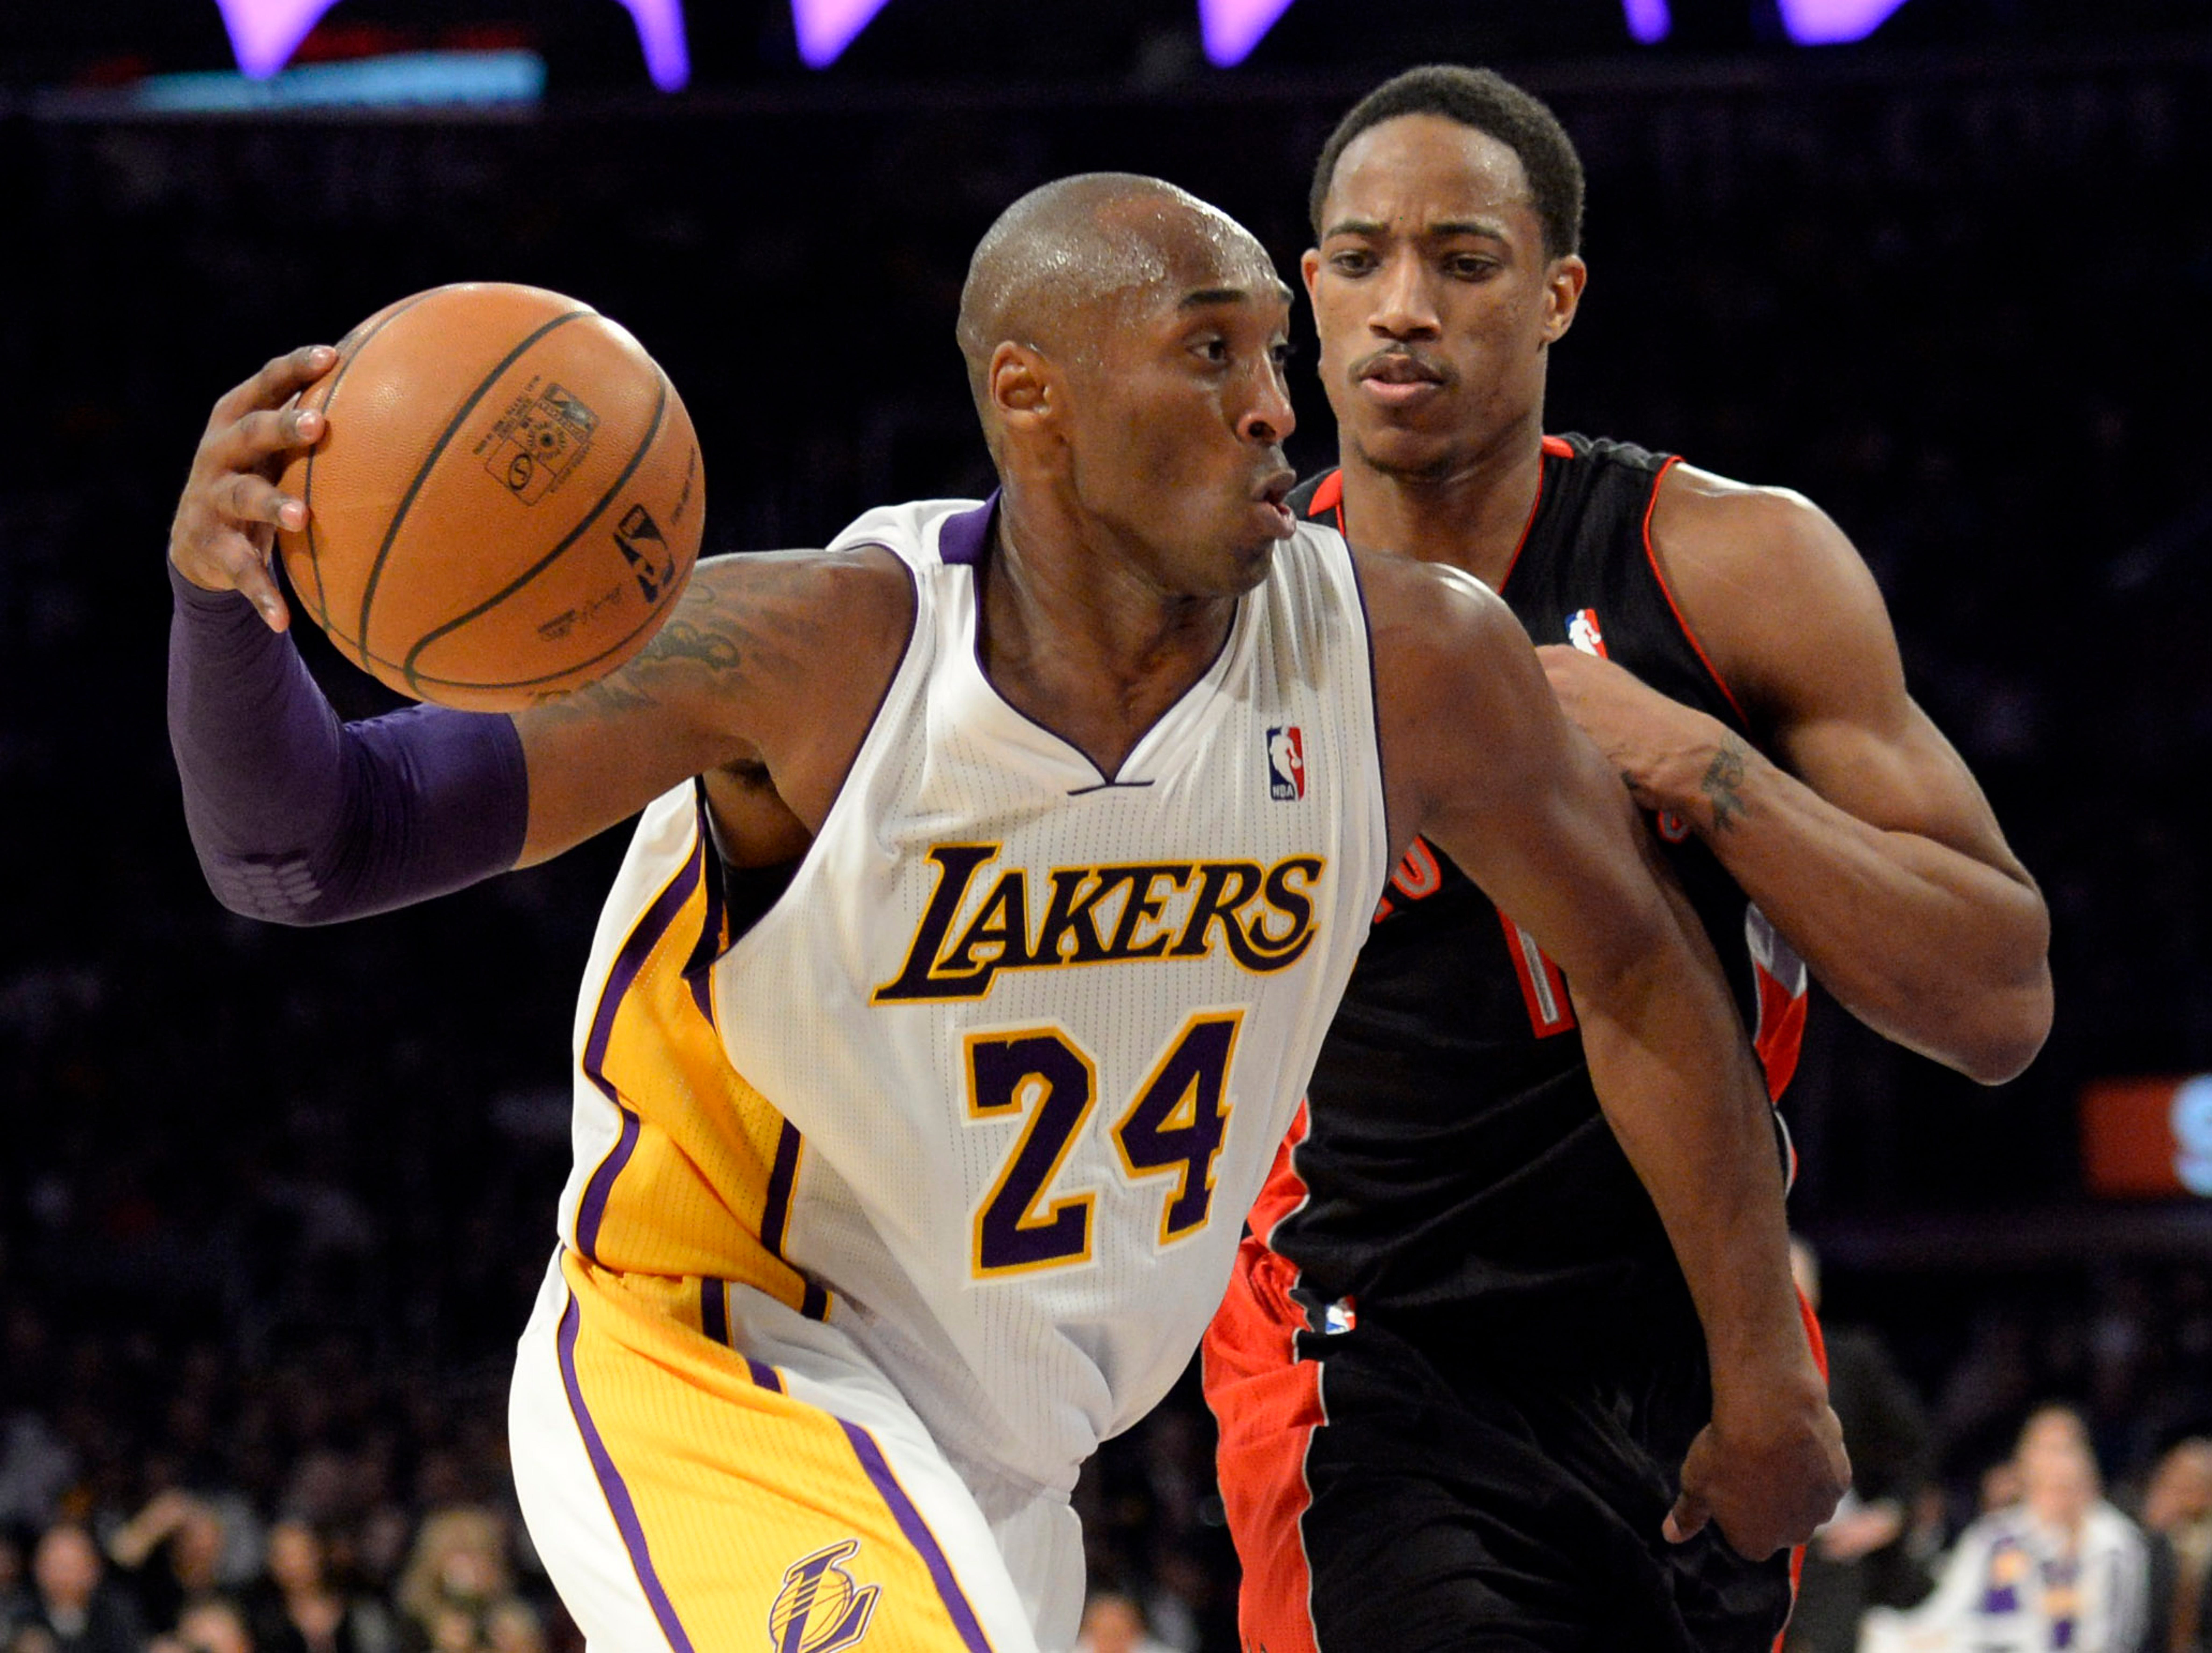 Lebron vs Kobe vs Jordan: Does it Really Matter Who's Better?